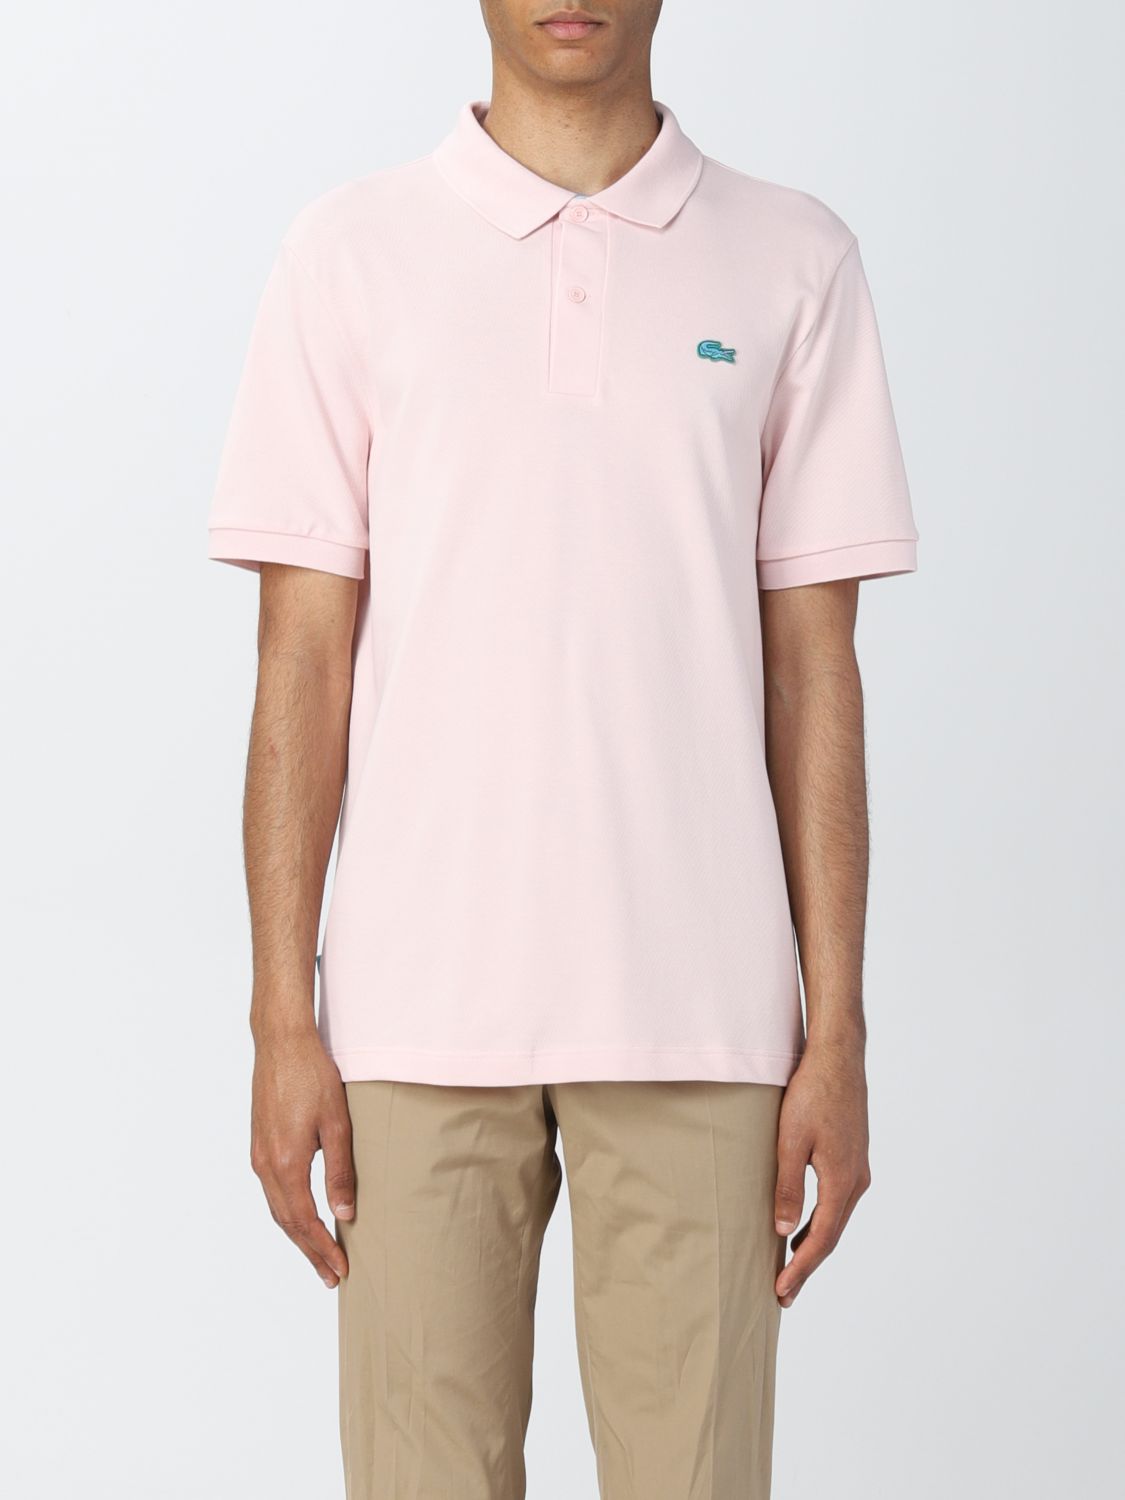 Polo shirt Lacoste L!Ve: Polo shirt men Lacoste L!ve pink 1